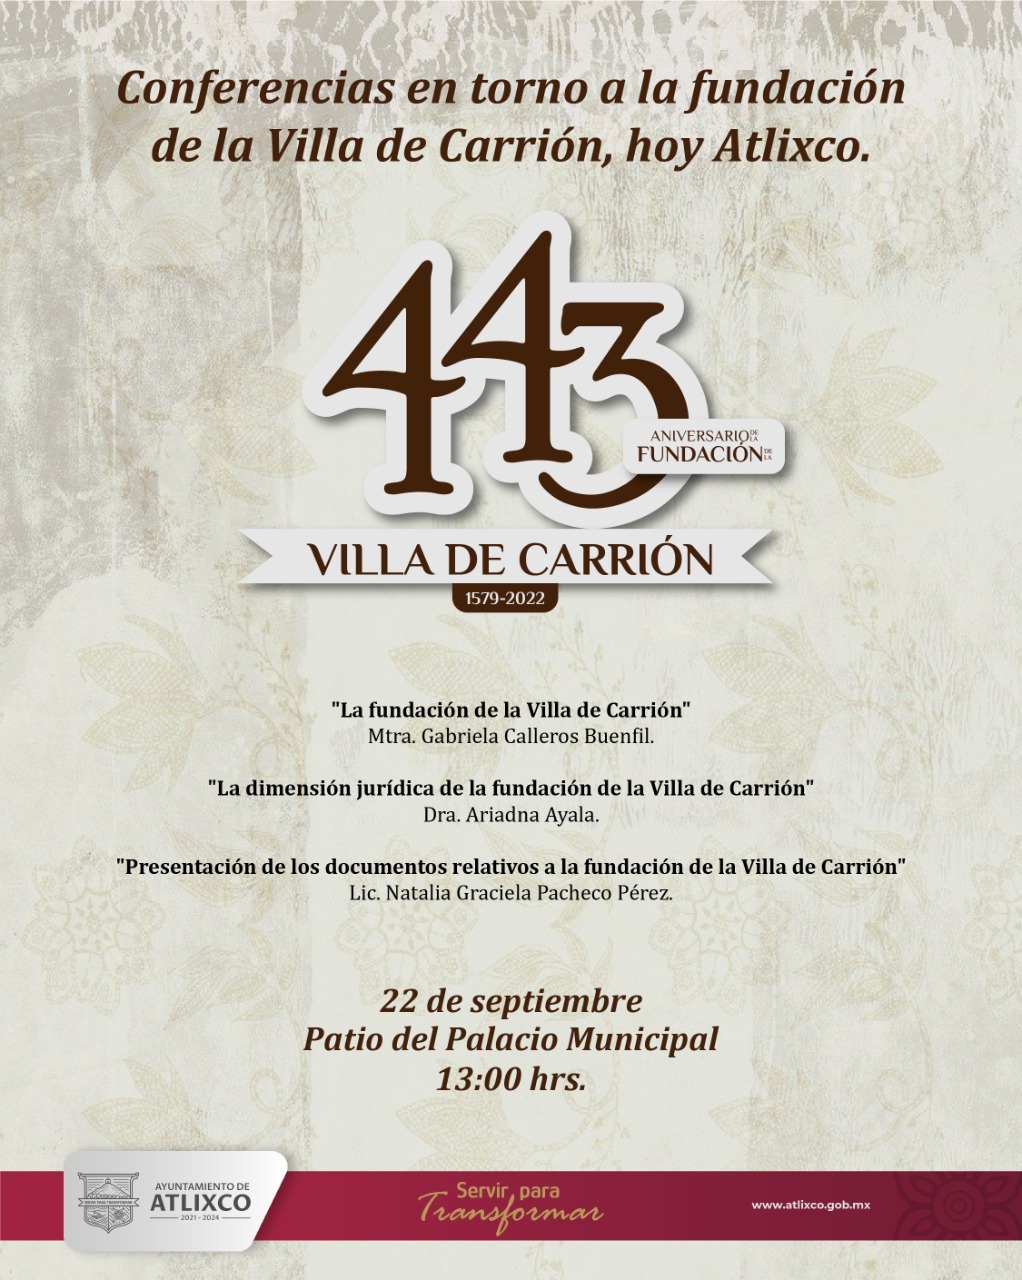 Atlixco festejará 443 años de la fundación de la Villa de Carrión